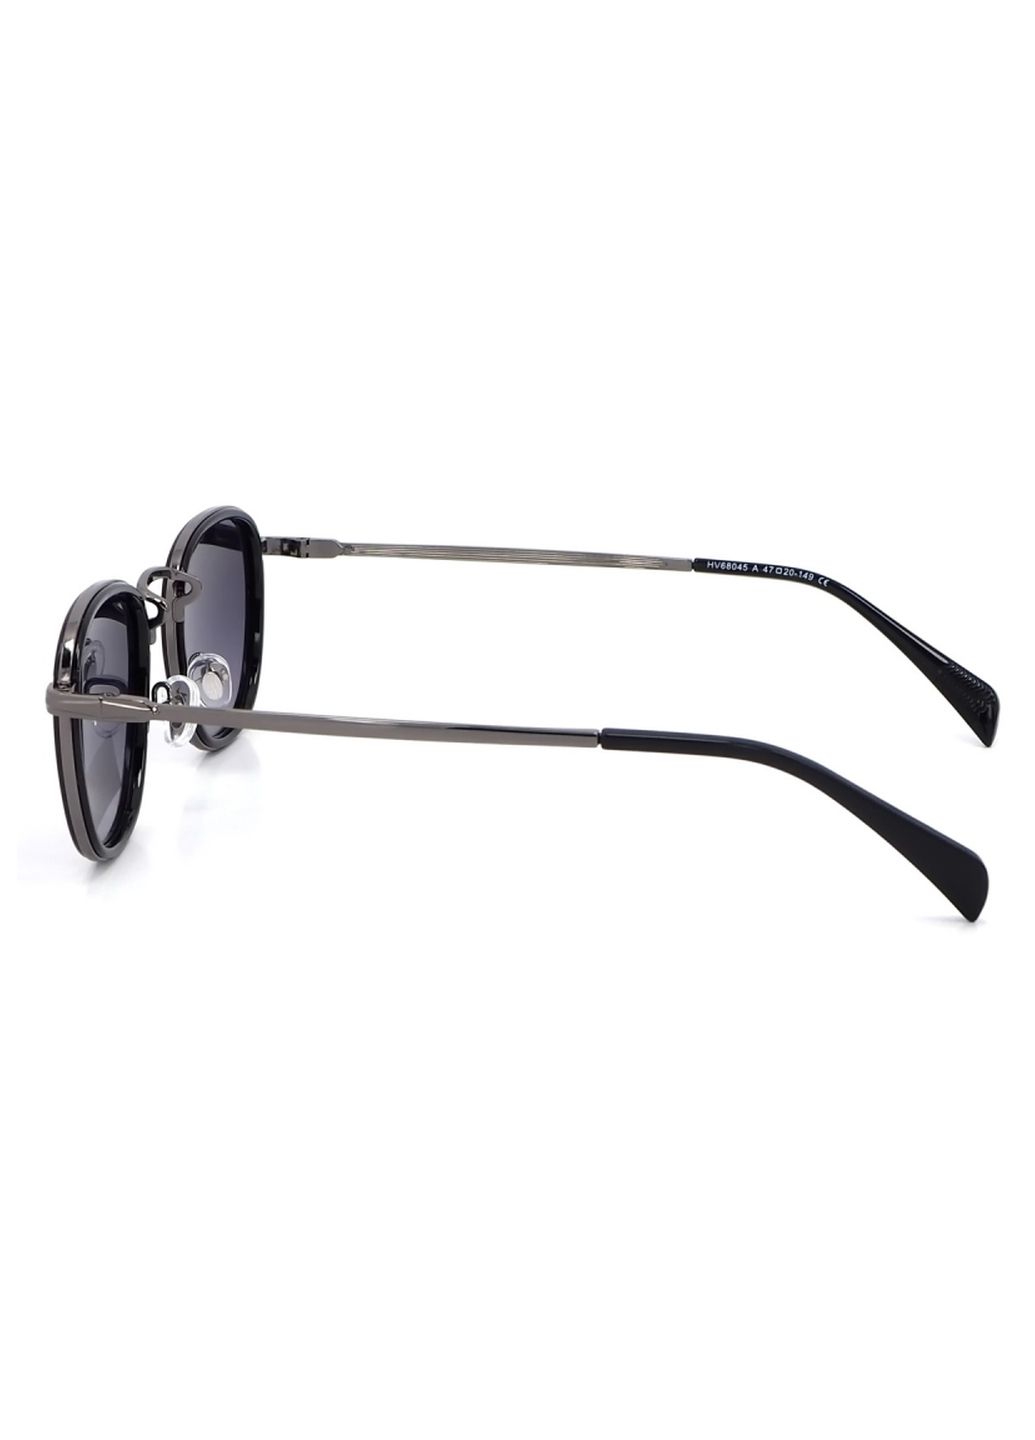 Купить Солнцезащитные очки c поляризацией HAVVS HV68045 170012 - Черный в интернет-магазине